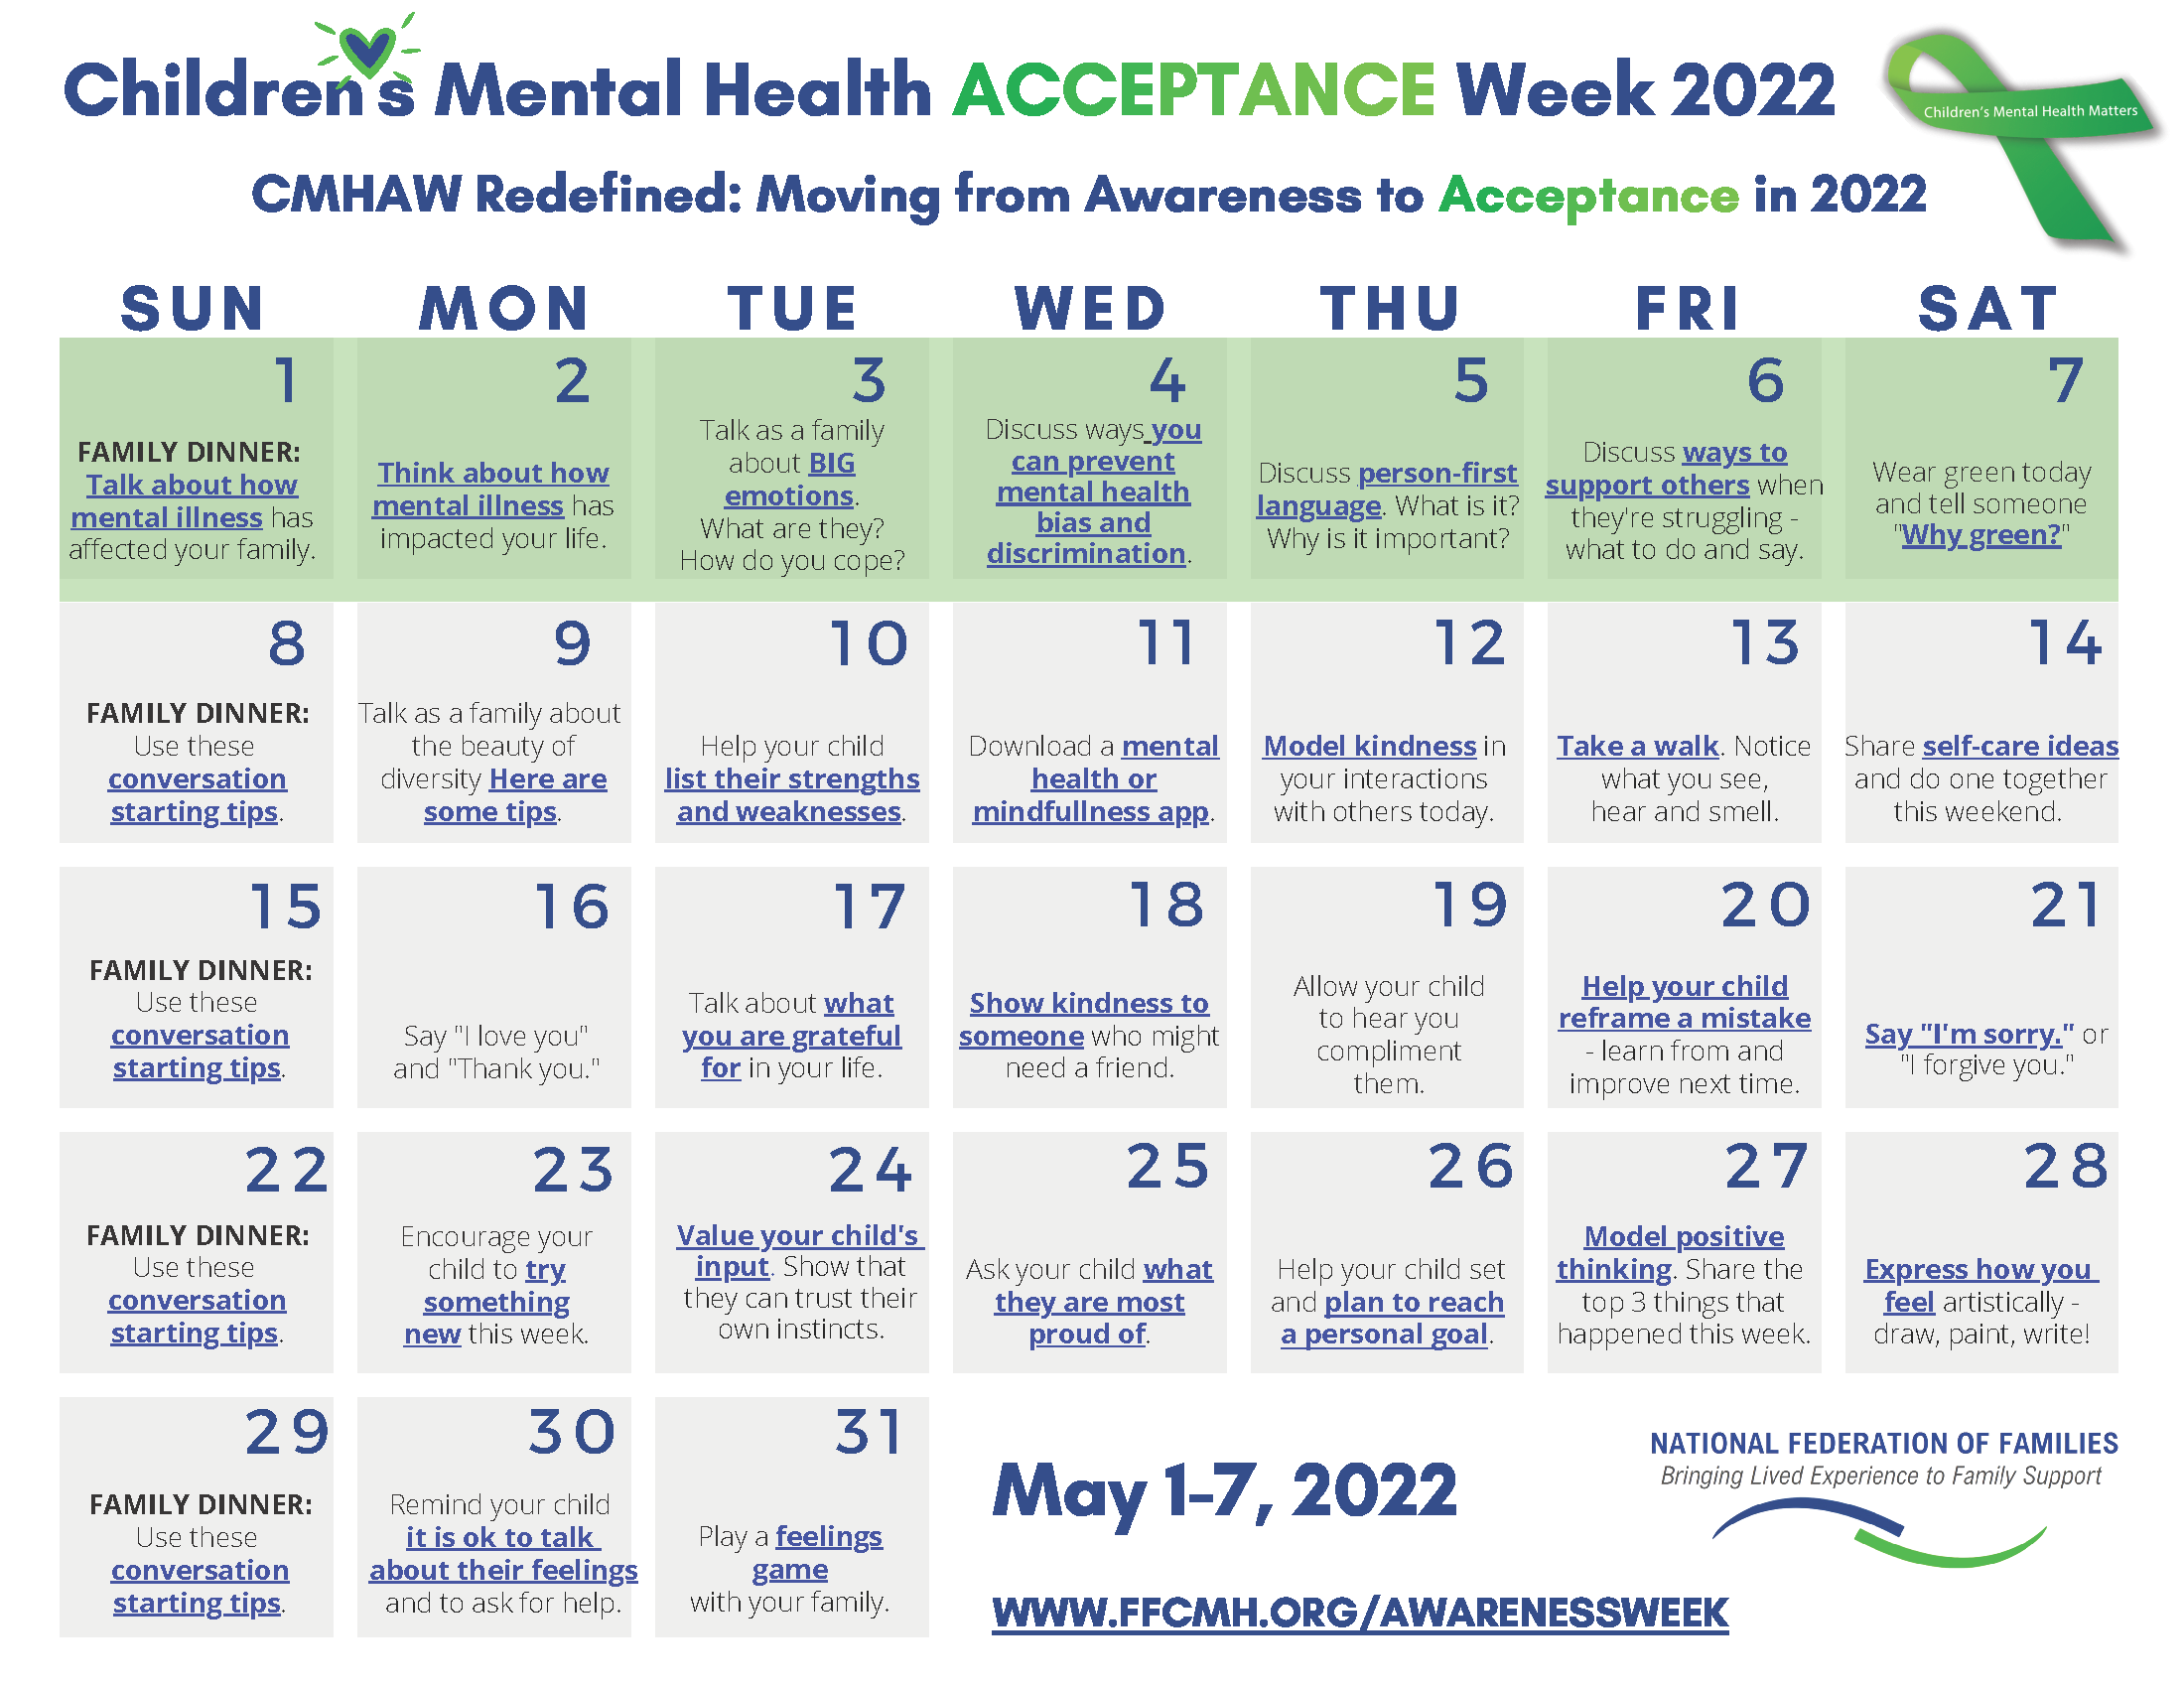 Children's Mental Health Awareness Week Calendar